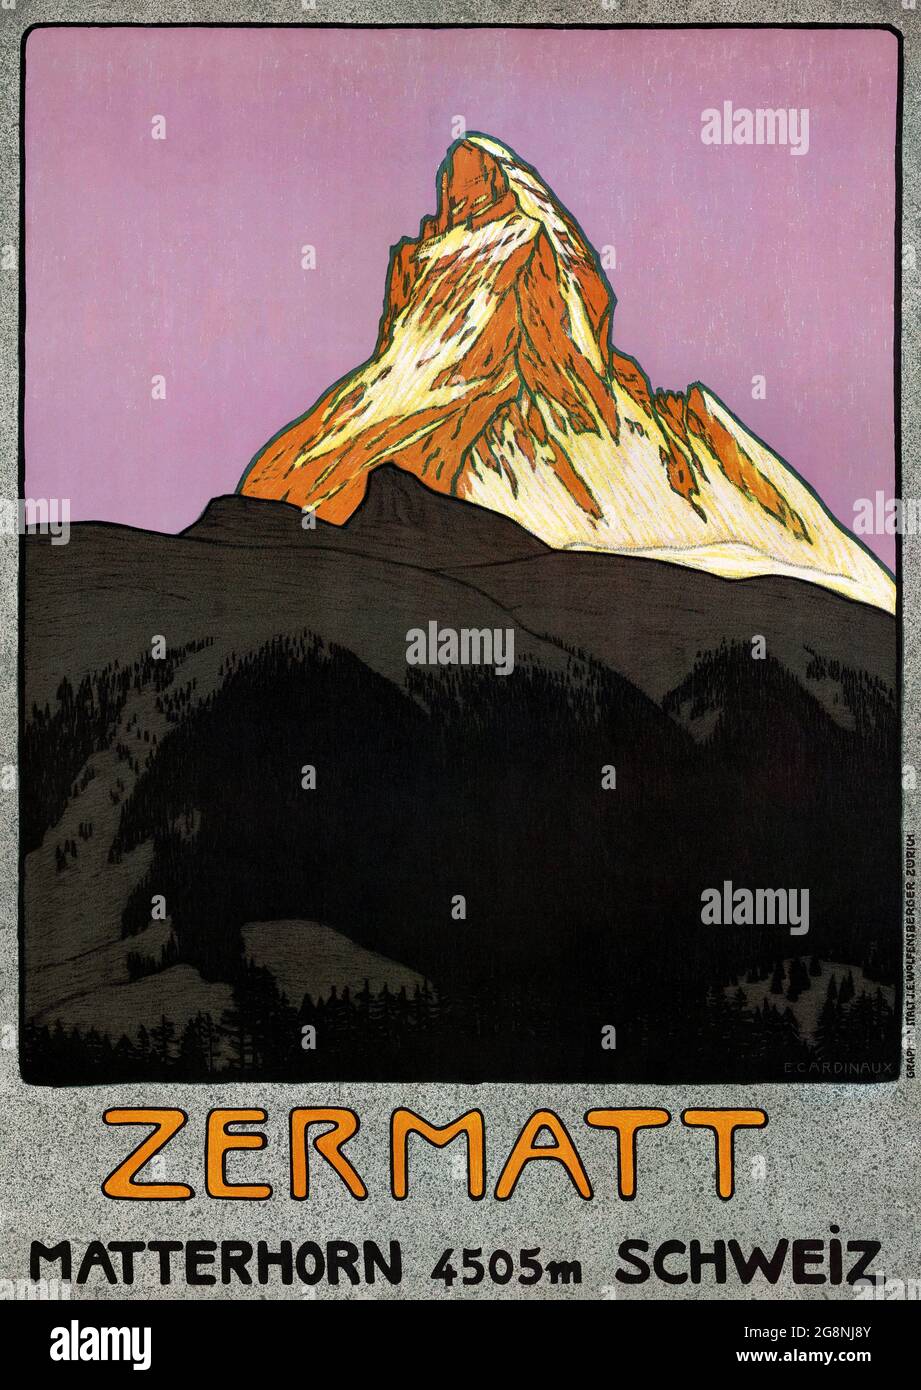 Zermatt Matterhorn 4505m Schweiz by Emil Cardinaux (1877-1936). Restored vintage poster published ca. 1908 in Switzerland. Stock Photo